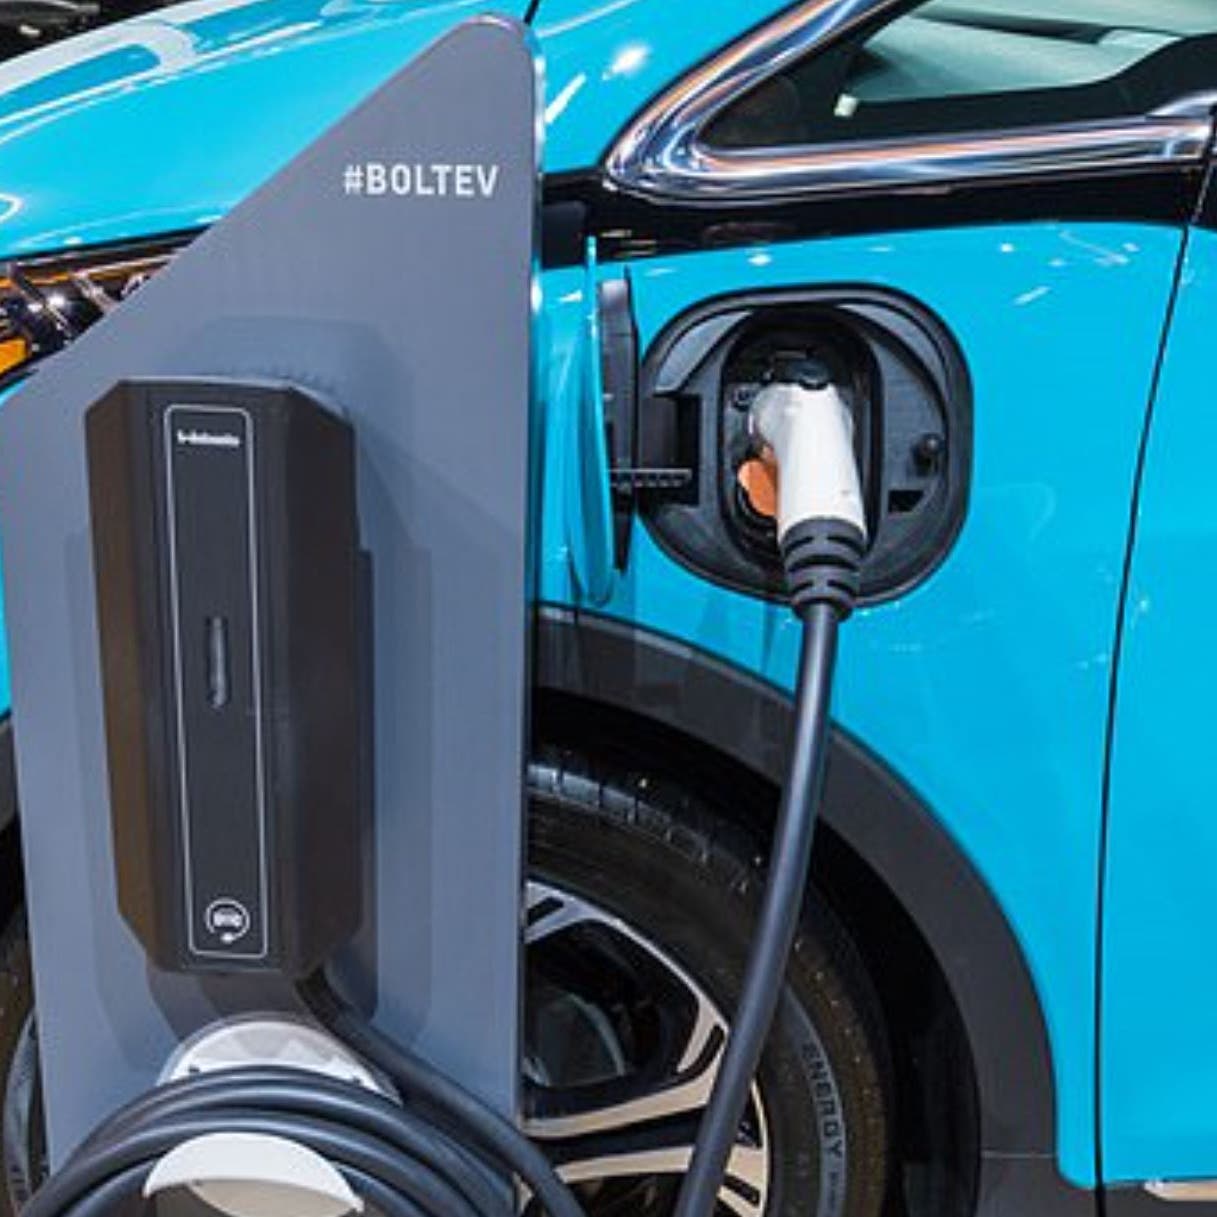 بحلول 2050... يجب أن تعمل جميع السيارات بالطاقة الكهربائية